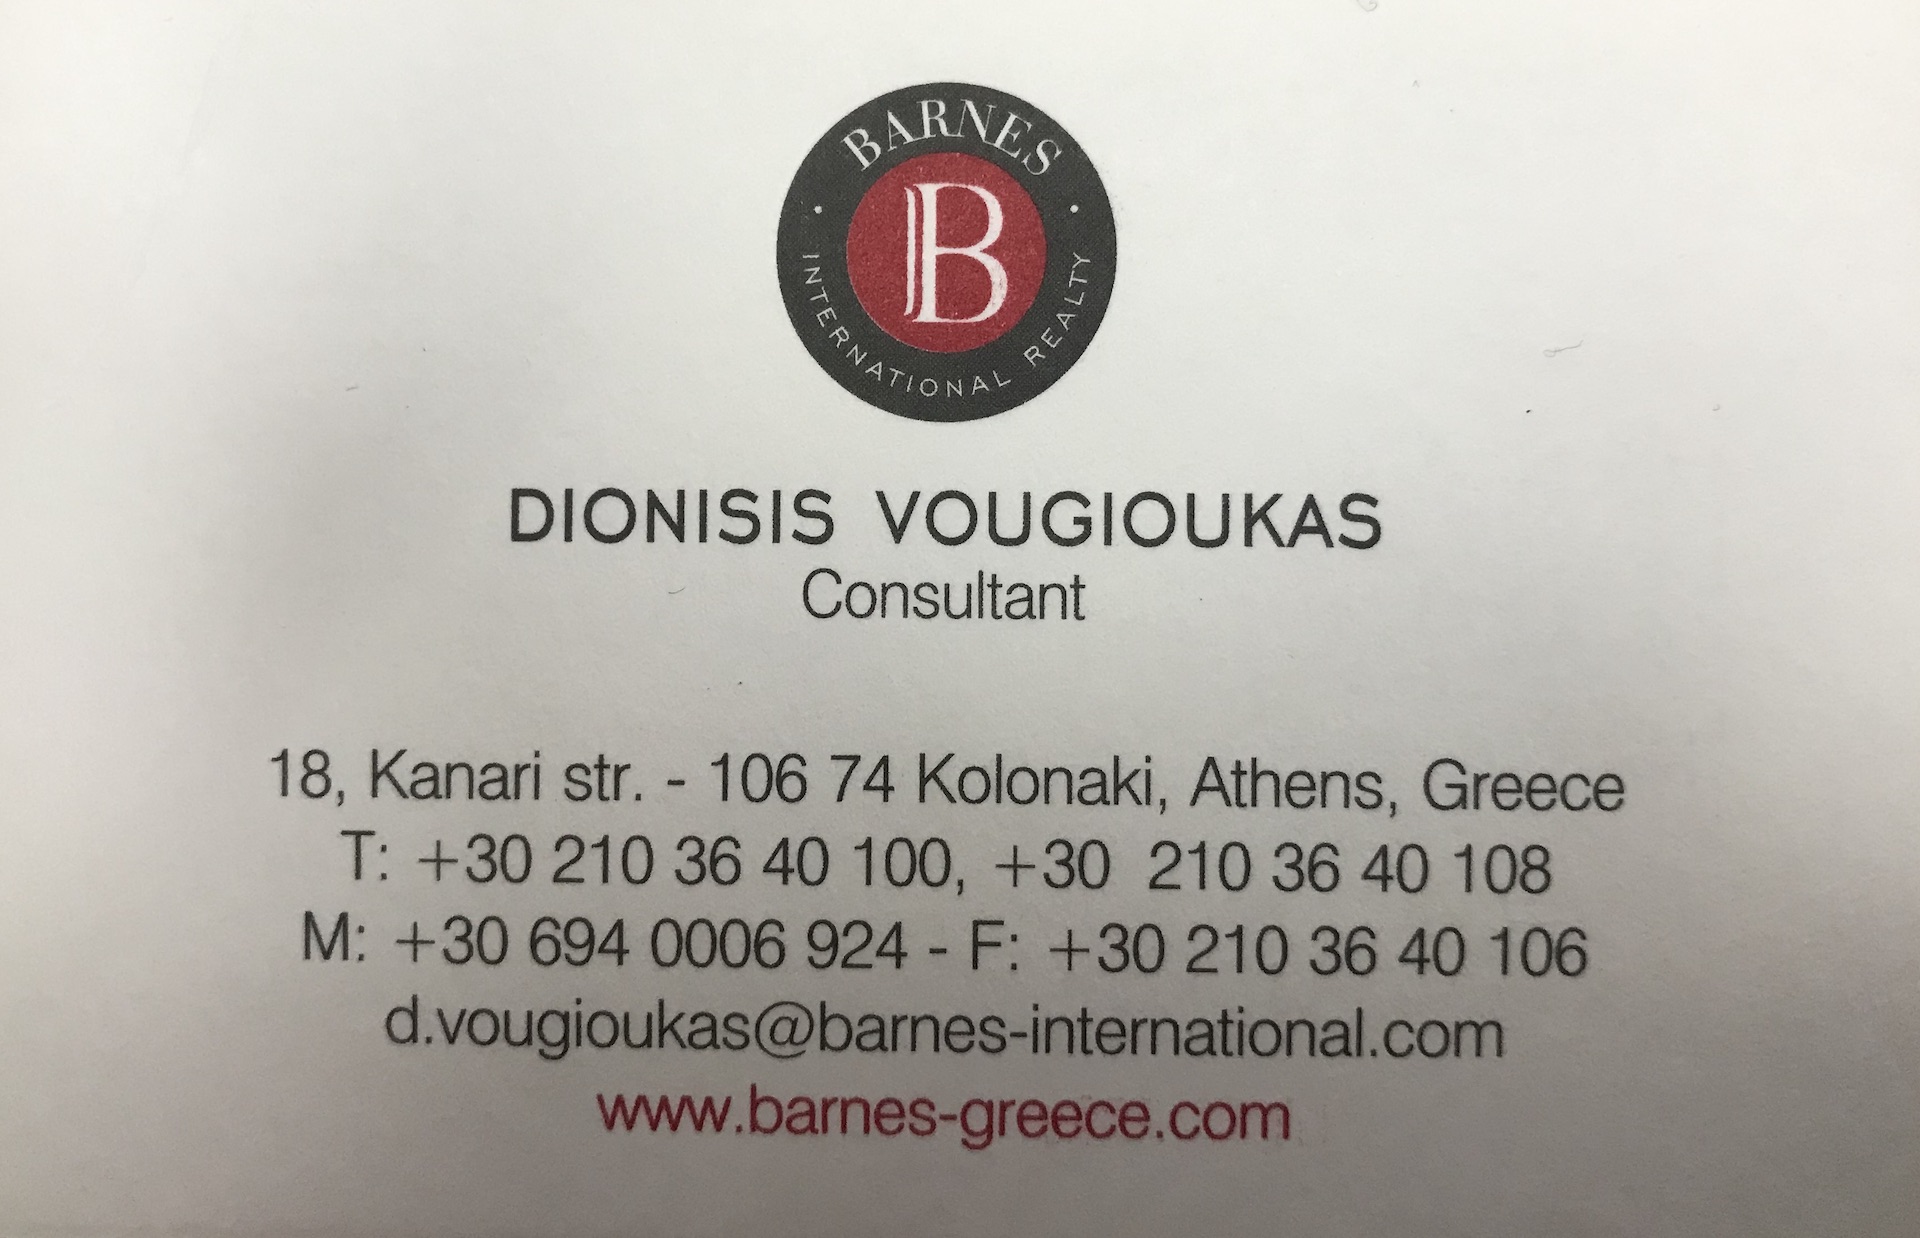 DIONYSIS VOUGIOUKAS BARNES INTERNATIONAL